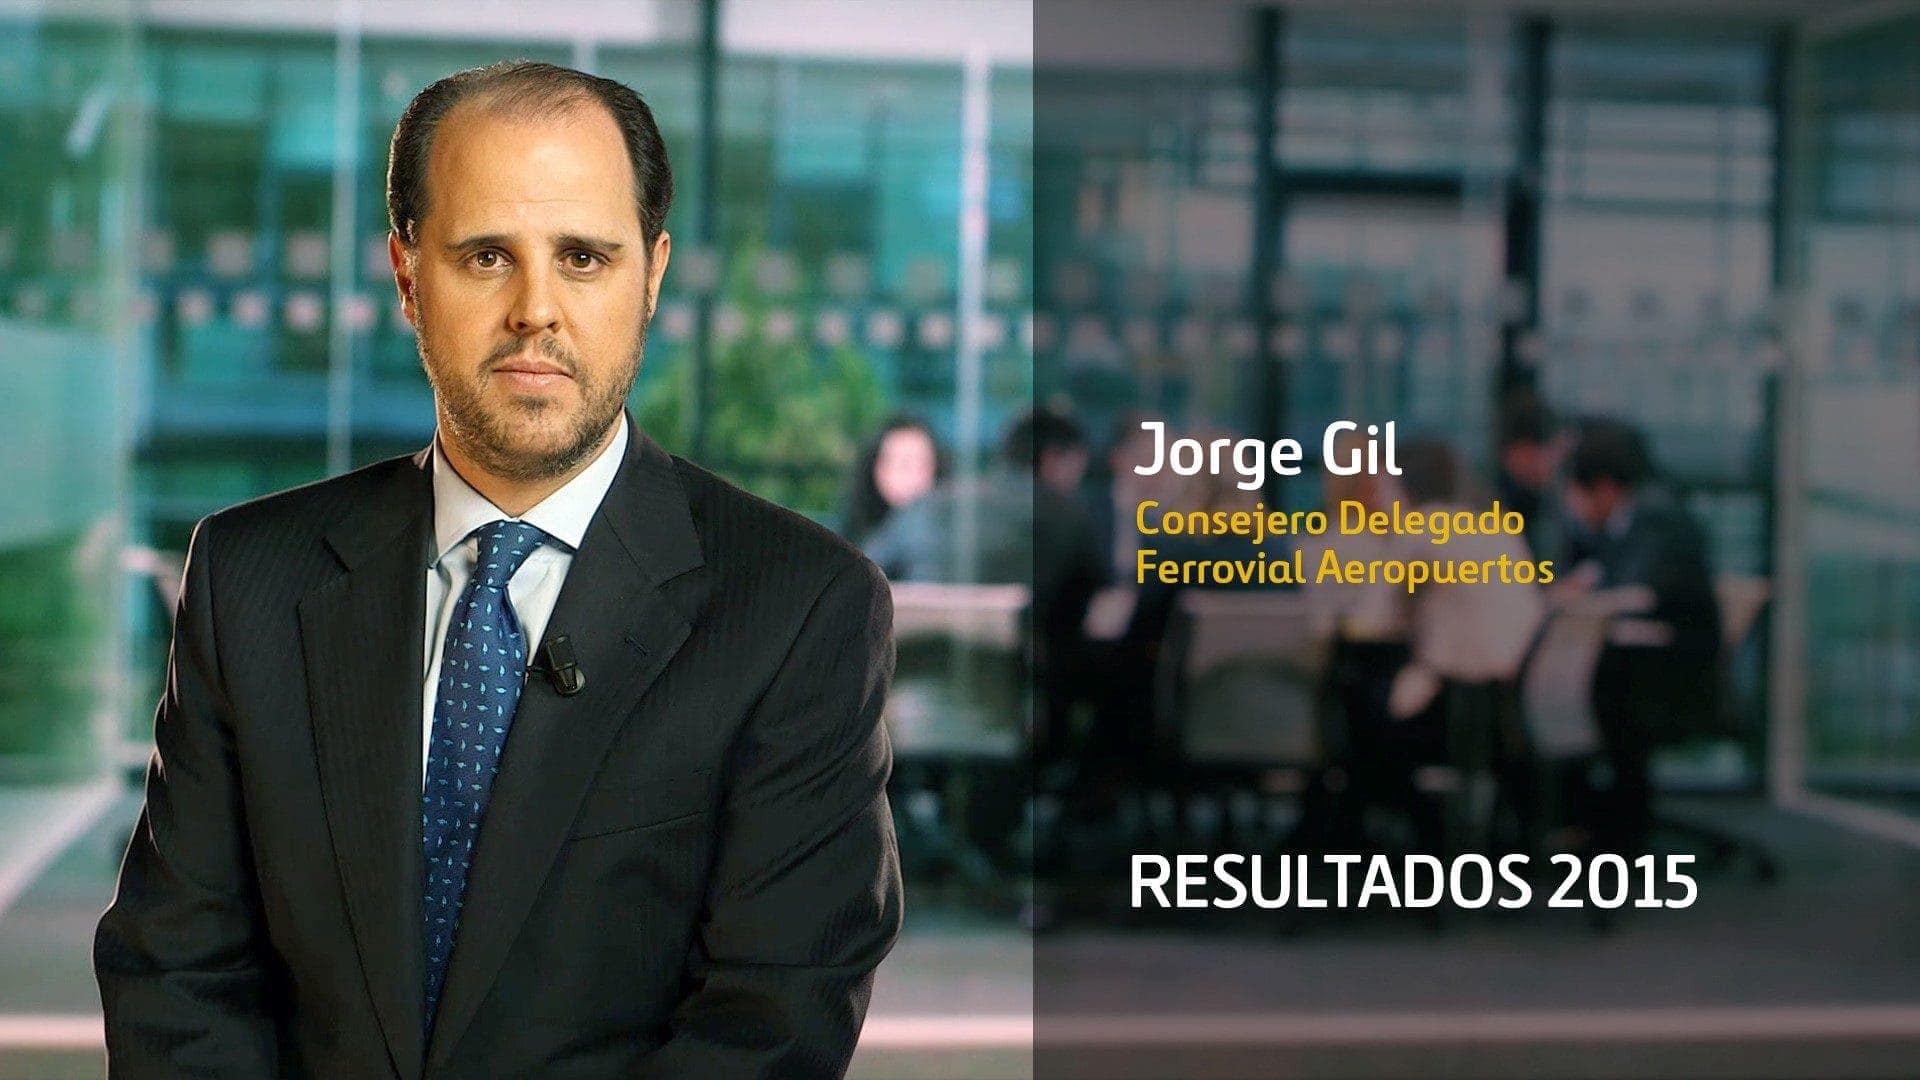 Jorge Gil Ferrovial Aeropuertos Resultados 2015